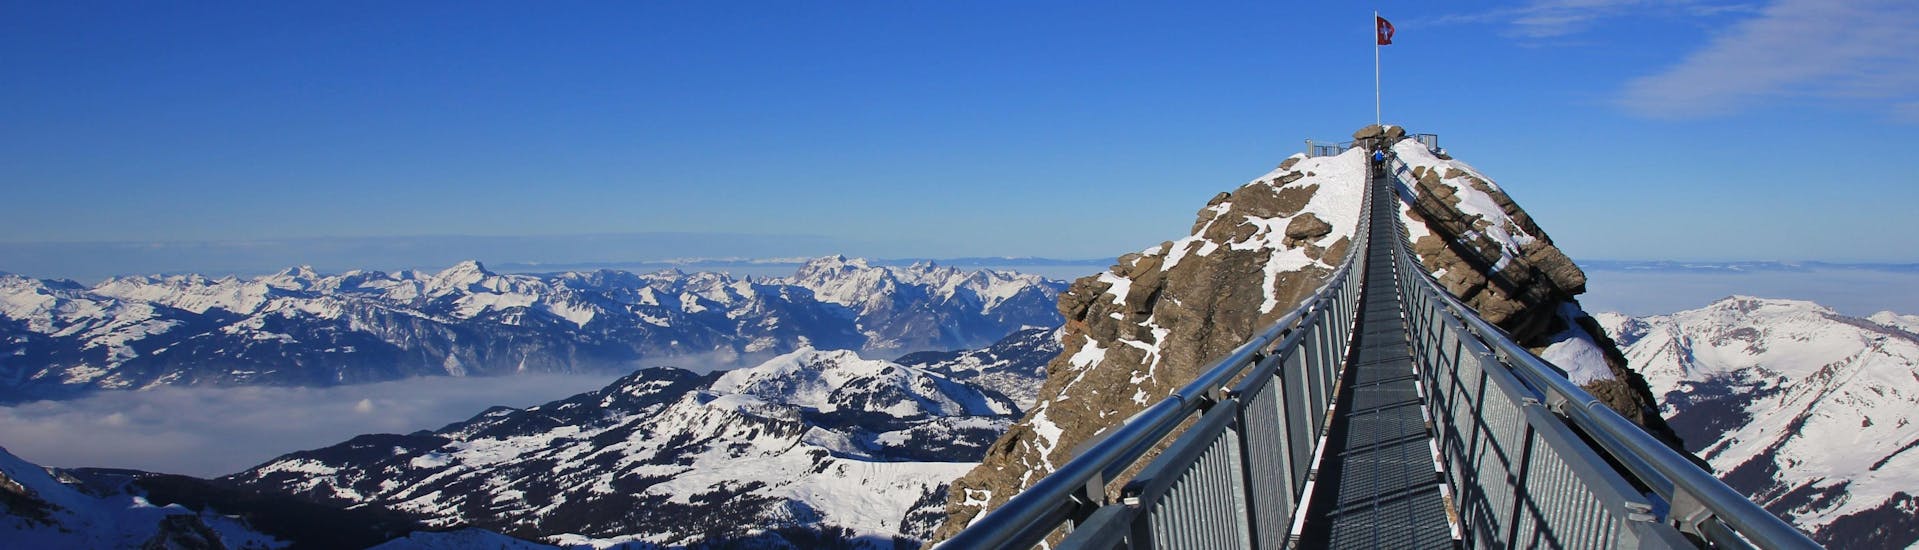 Blick auf das Skigebiet Glacier 3000 im Winter, wo Skischulen ihre Skikurse anbieten.